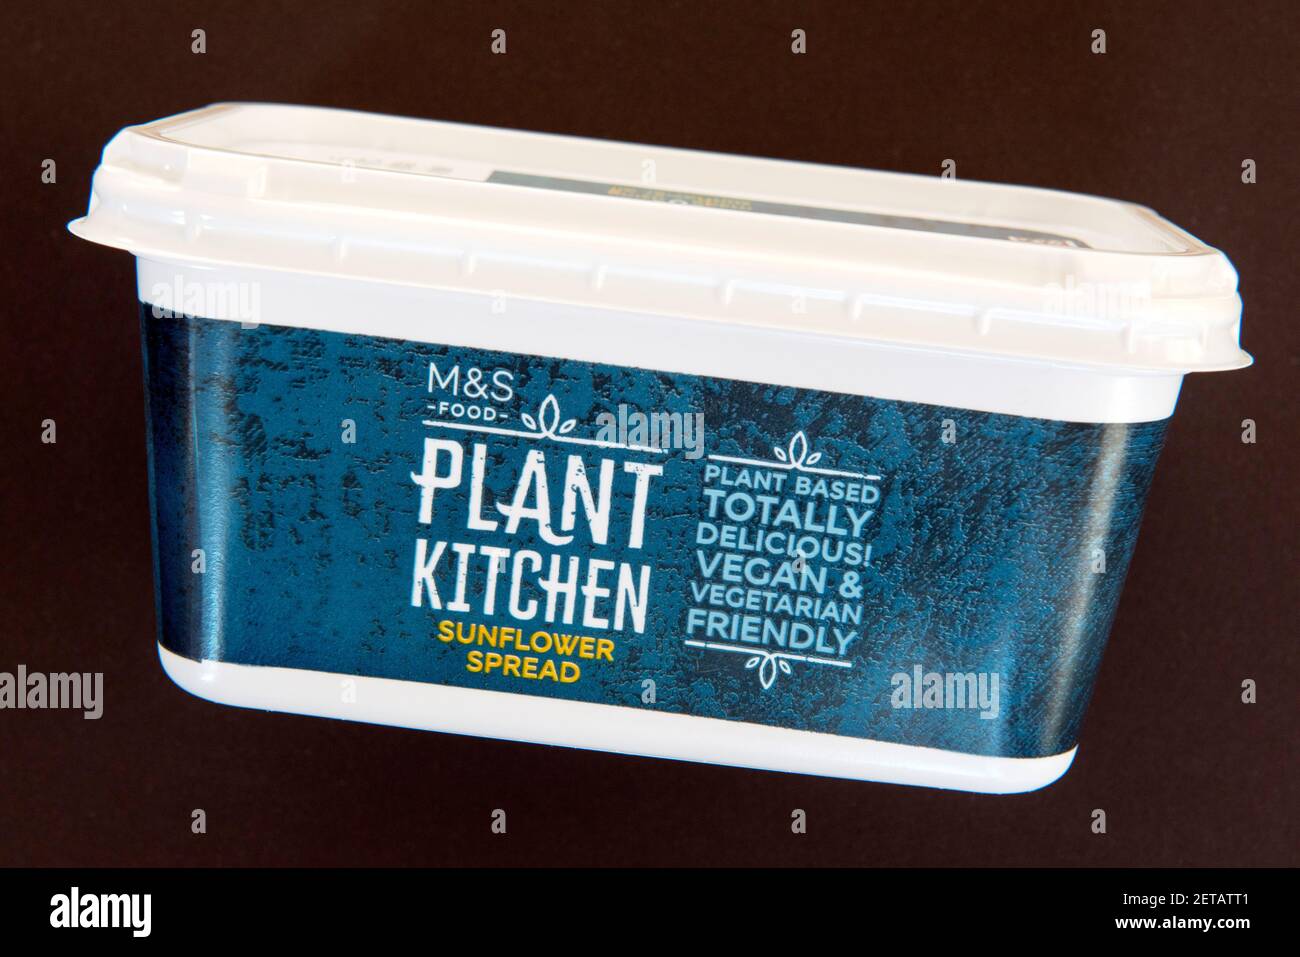 Bac de produits laitiers M&S Food Plant Kitchen vegan à tartiner au tournesol margarine libre isolée sur fond noir Banque D'Images